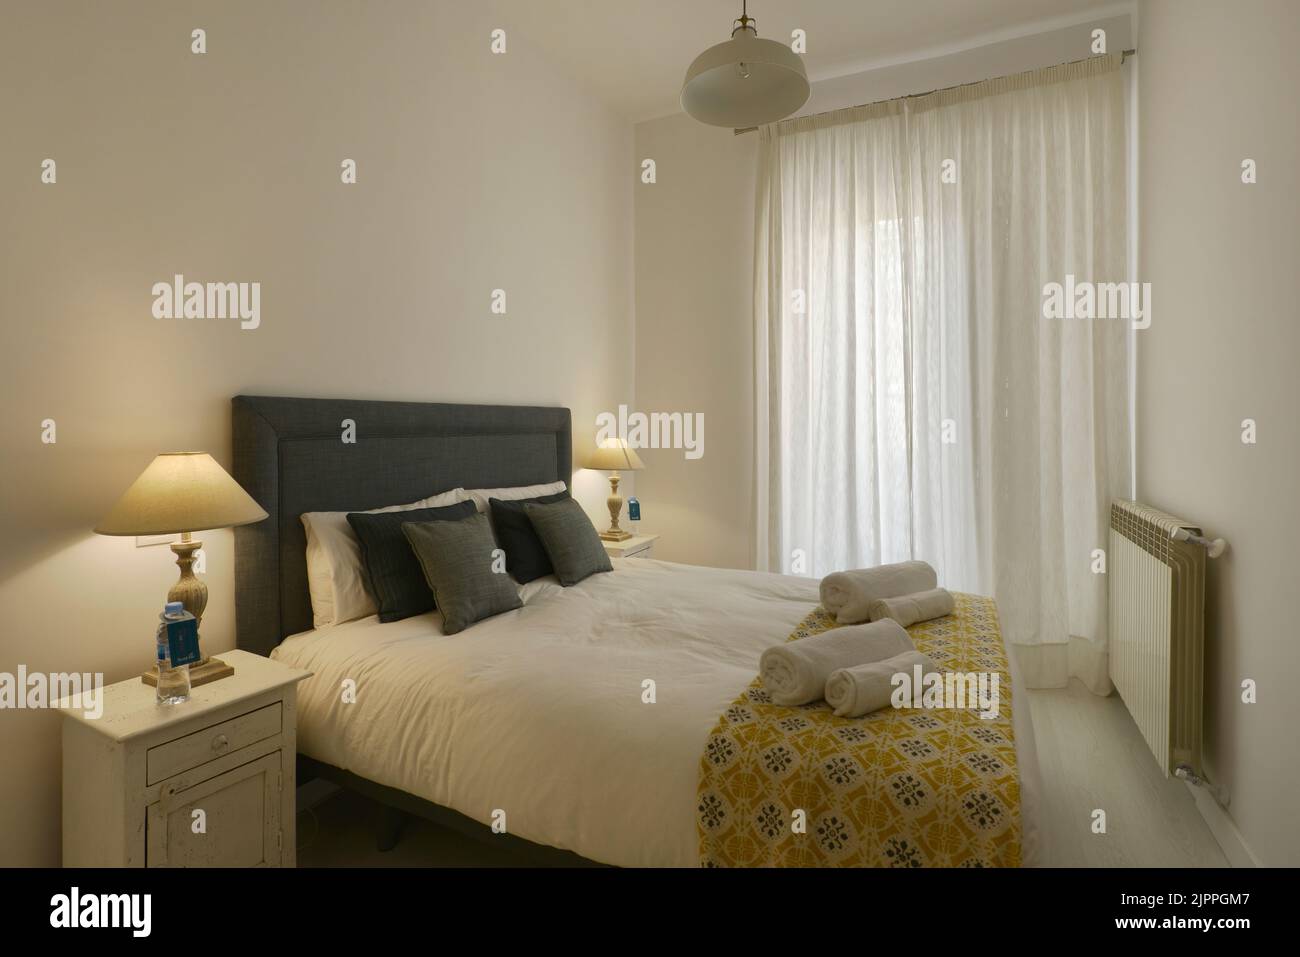 Dormitorio decorado en tonos suaves, cabecera tapizada en tela azul, cojines y lámparas a juego, cortinas blancas y toallas limpias Foto de stock